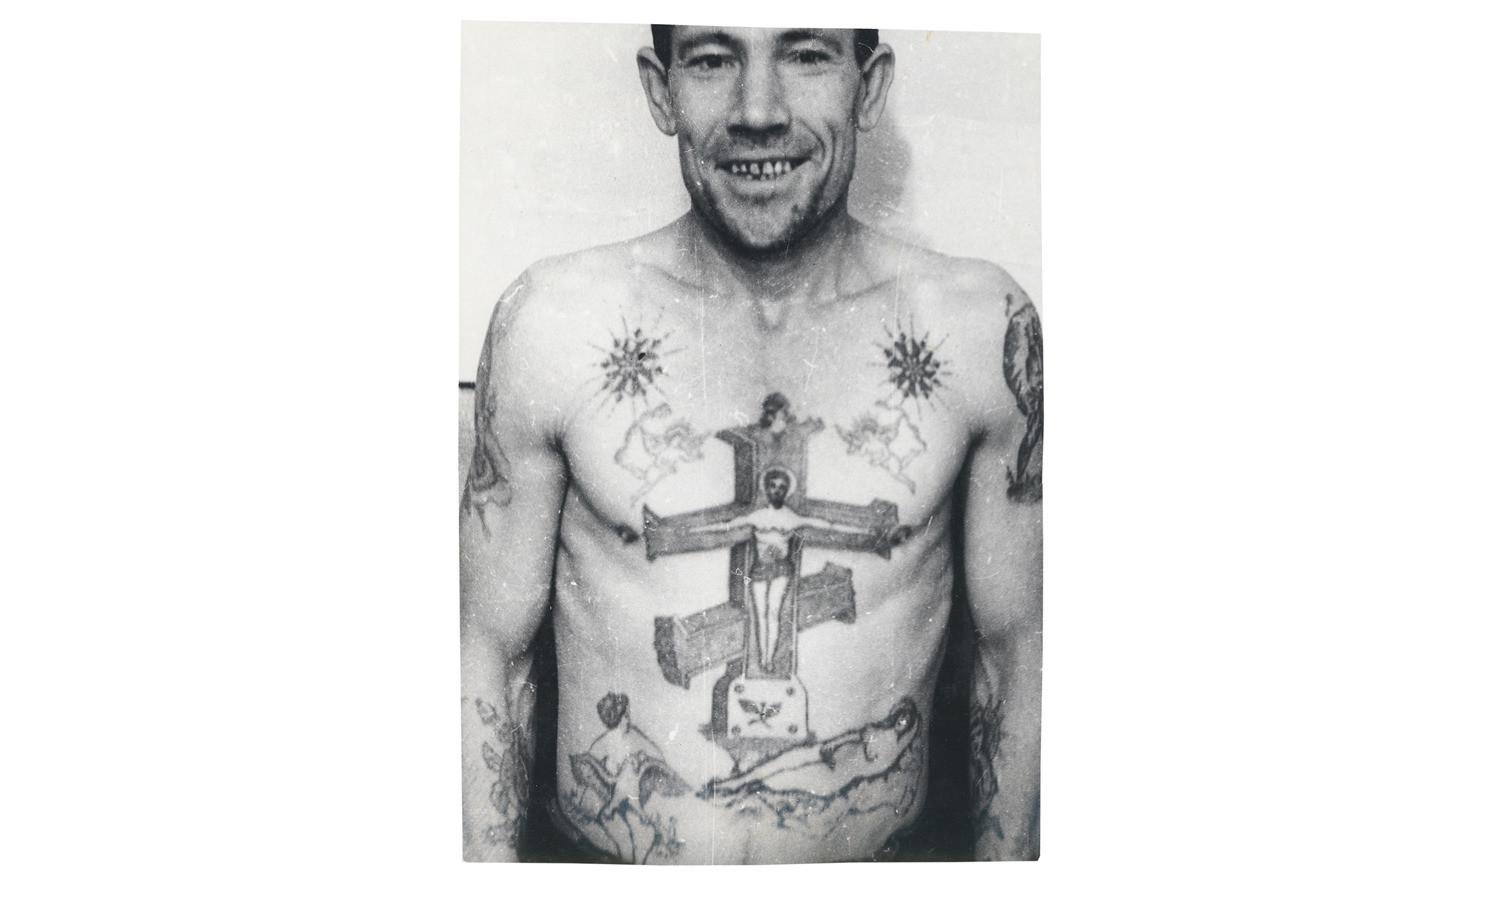 Линии размещённые внутри концов звезды на плечах этого заключённого означают, что обладатель татуировки нёс военную службу, но бросил её и ушел в криминал.